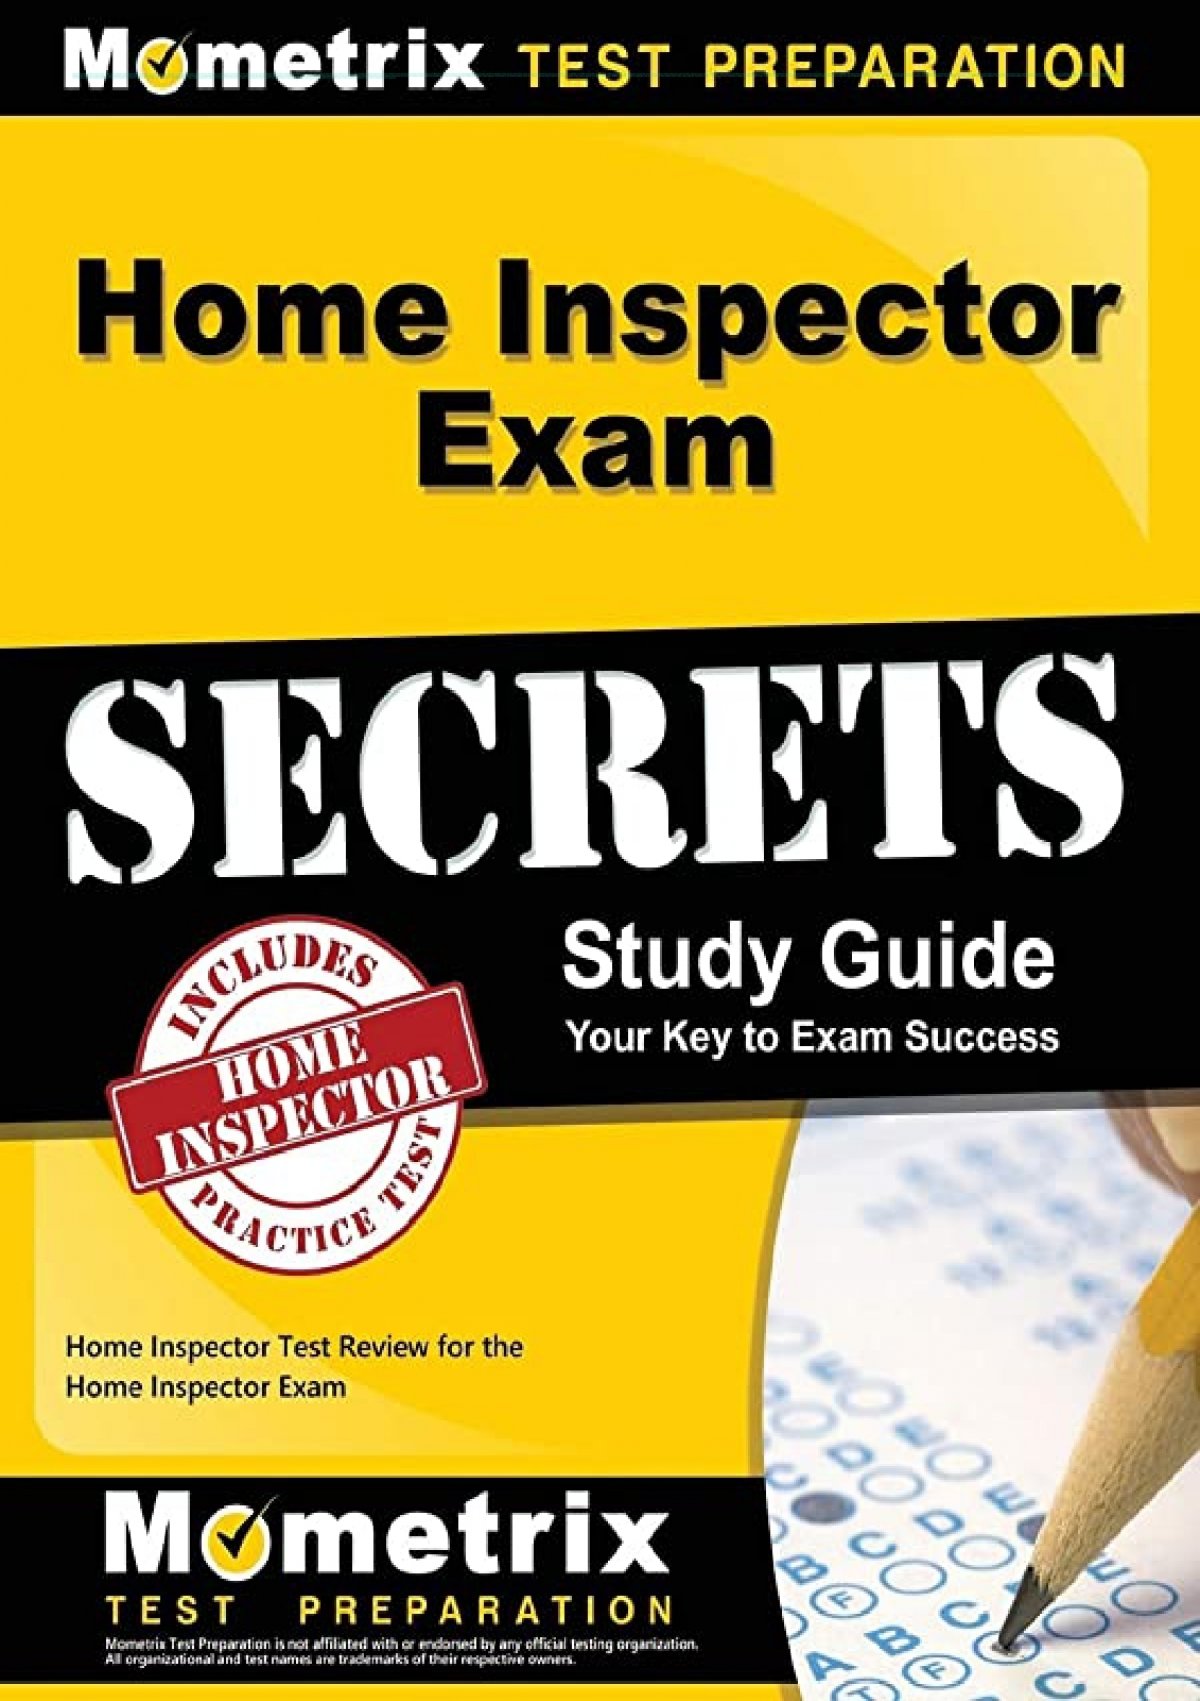 free-home-inspector-exam-secrets-study-guide-home-inspector-test